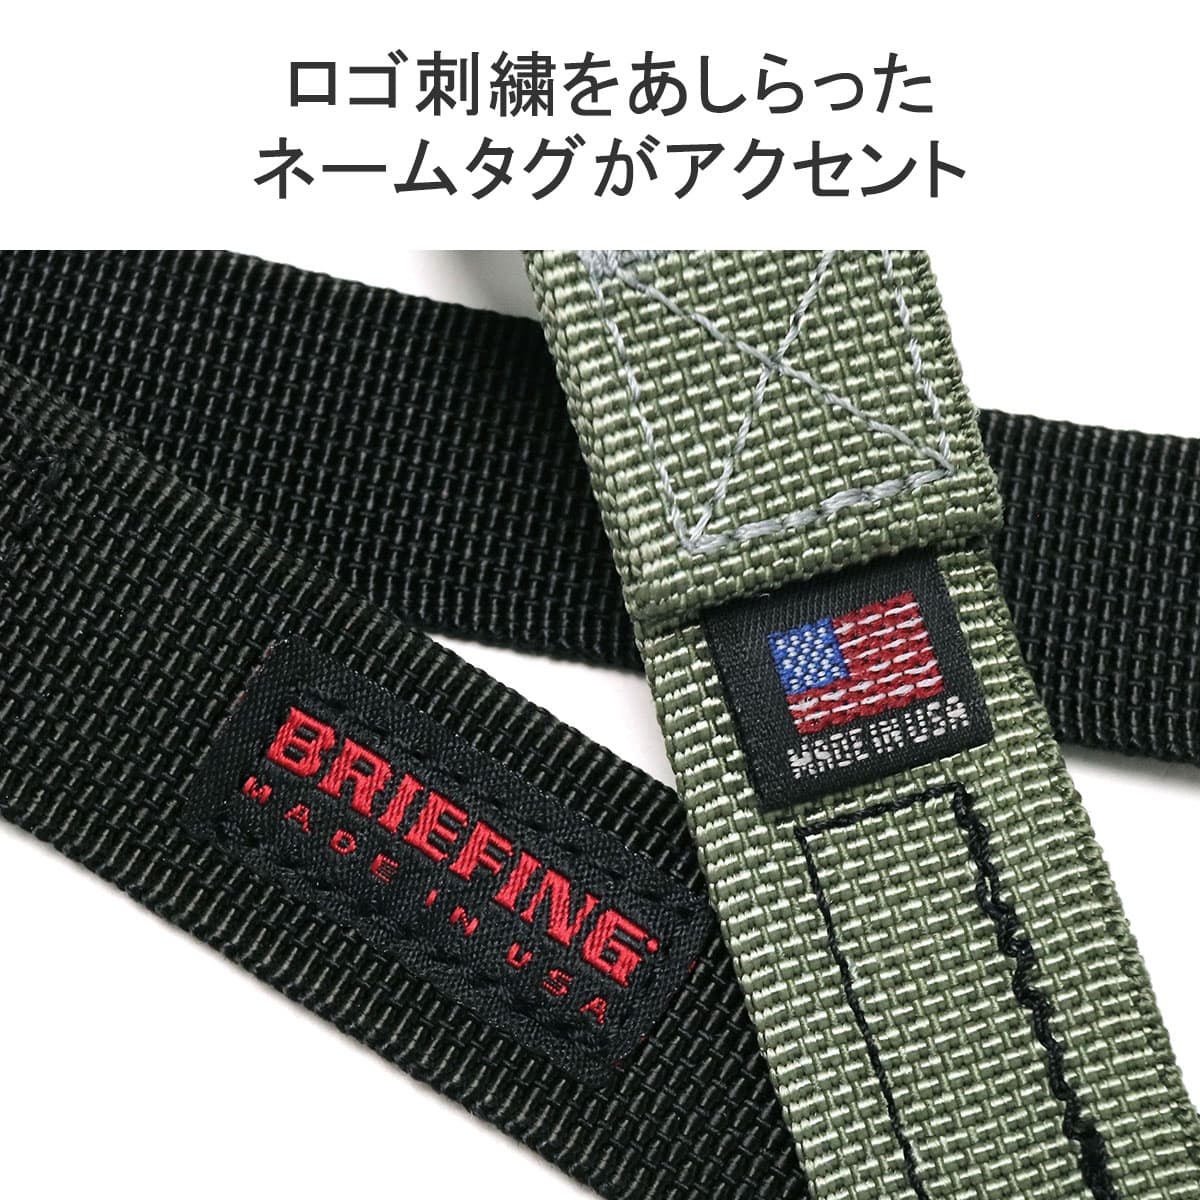 【日本正規品】BRIEFING ブリーフィング MADE IN USA COLLECTION W RING BELT ベルト BRA241G06